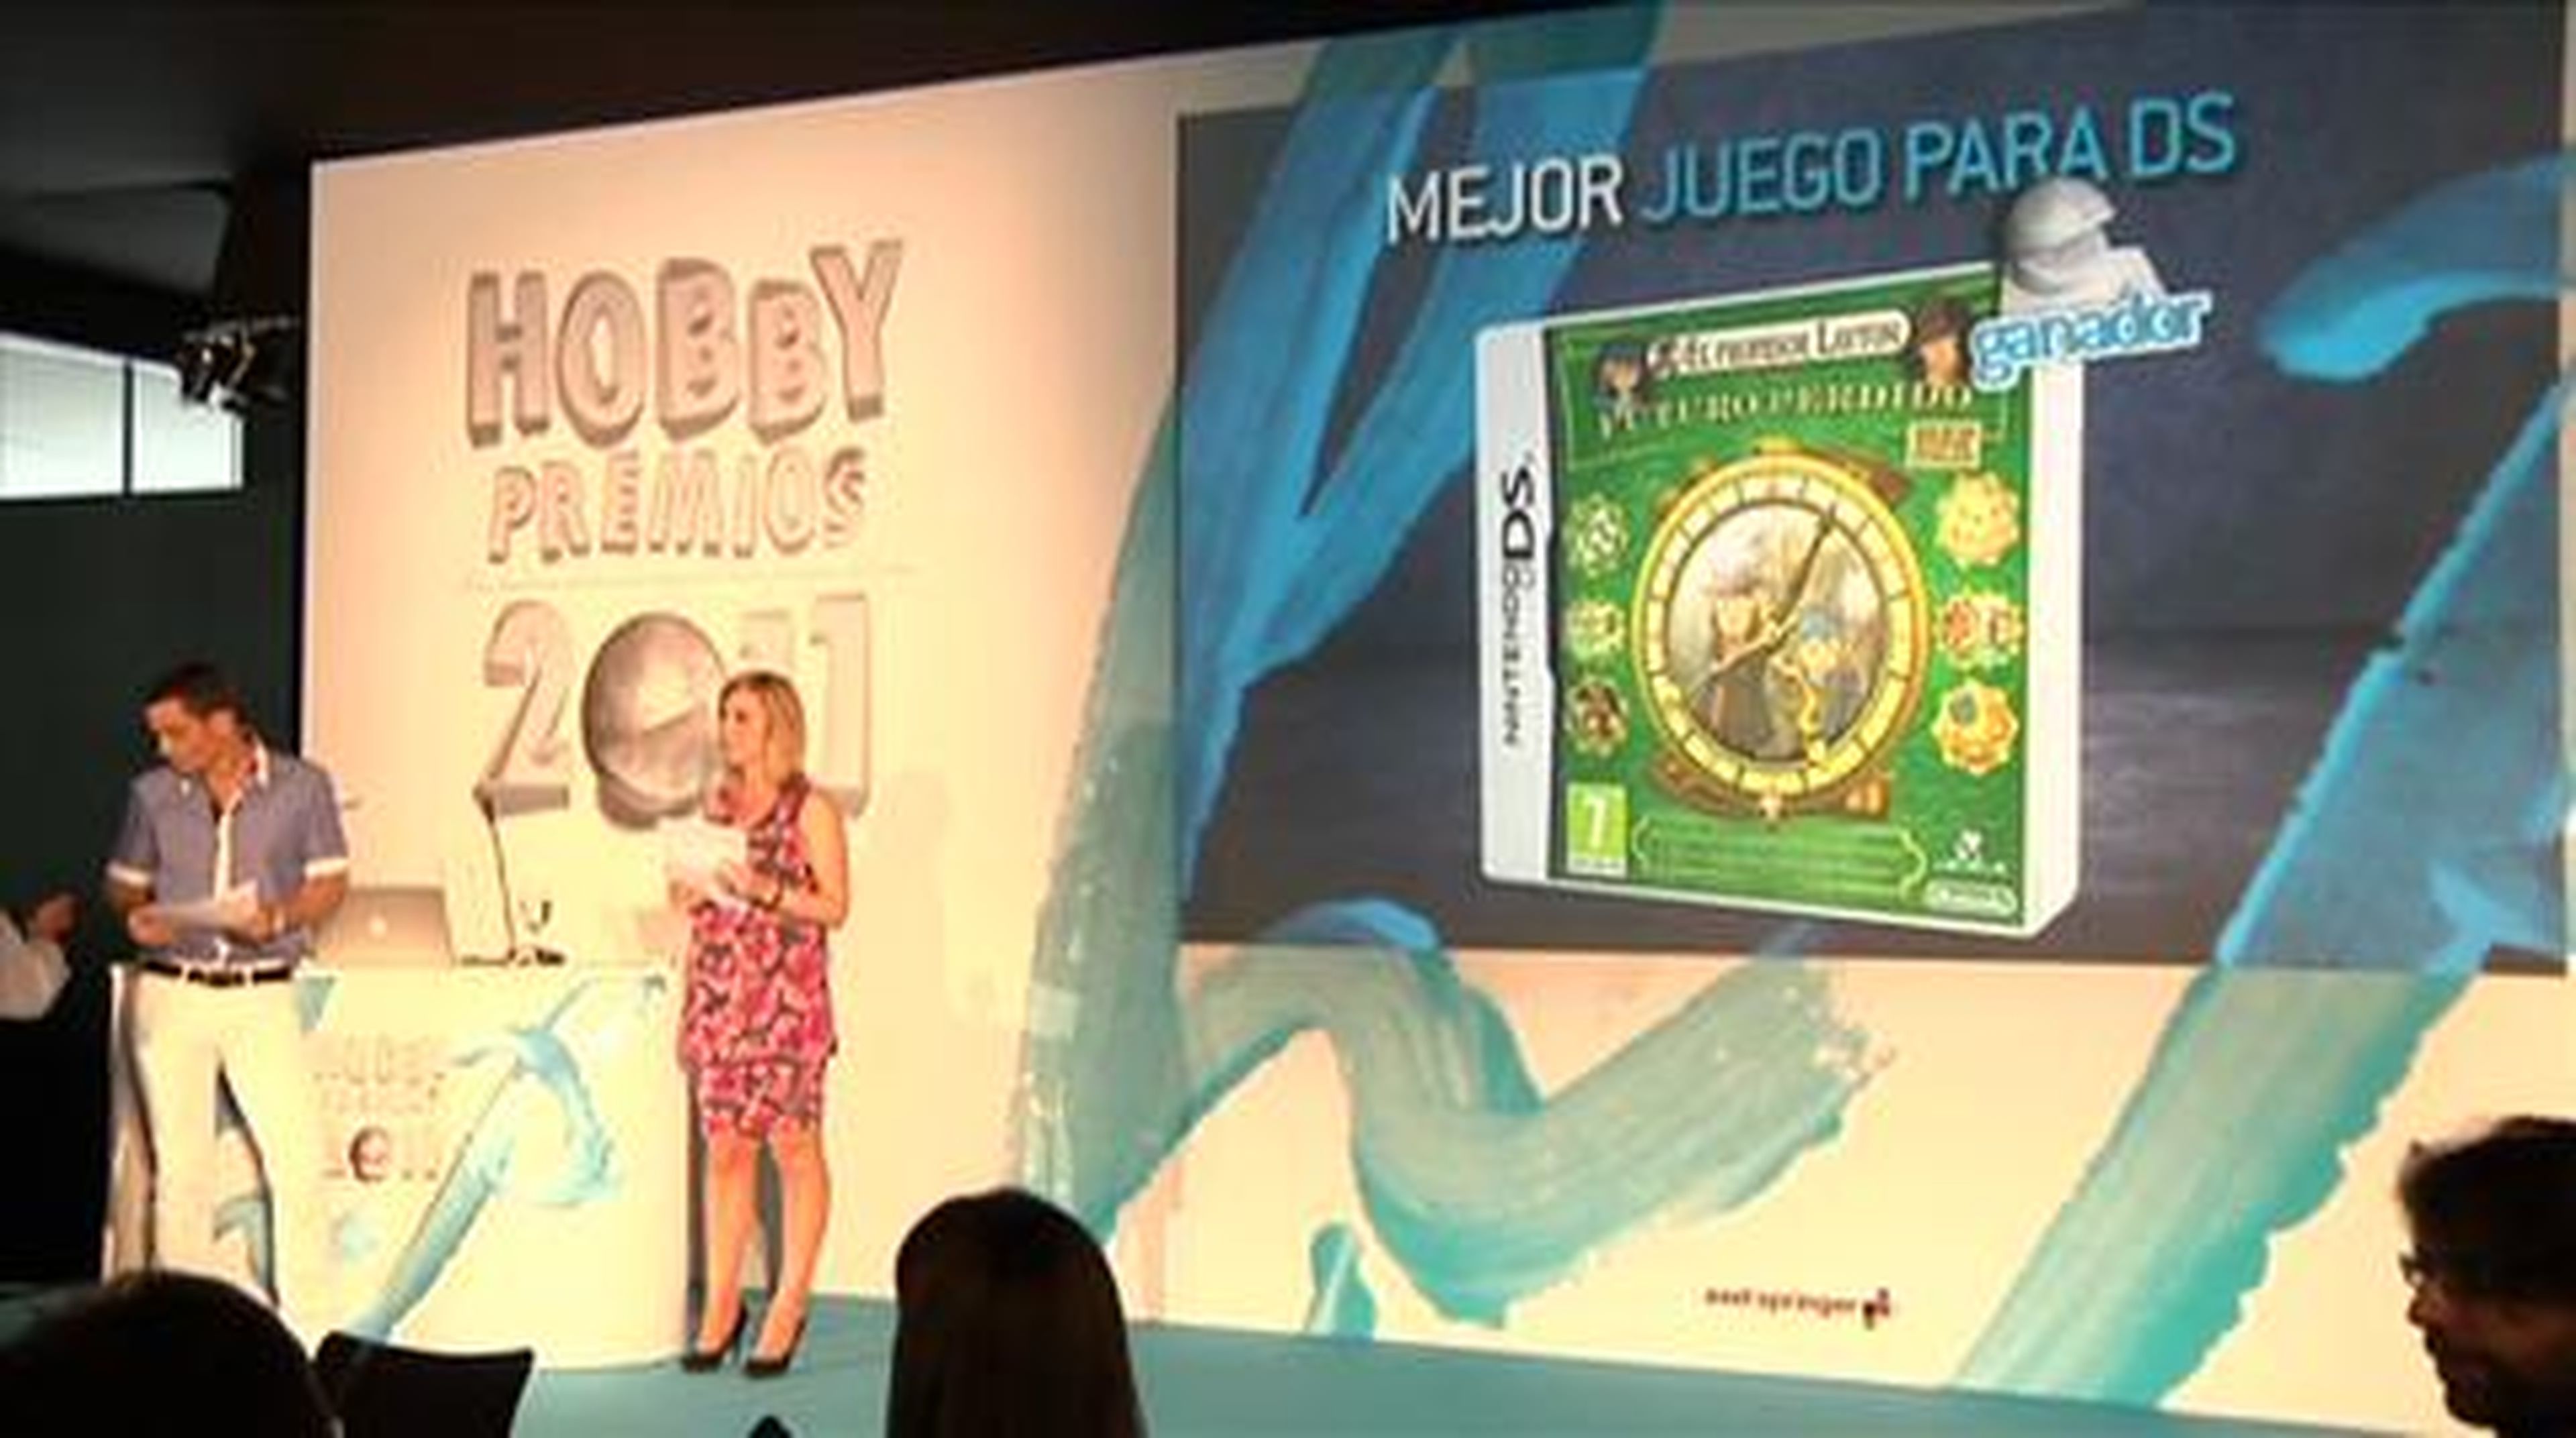 Hobby Premios 2011: mejor juego de DS